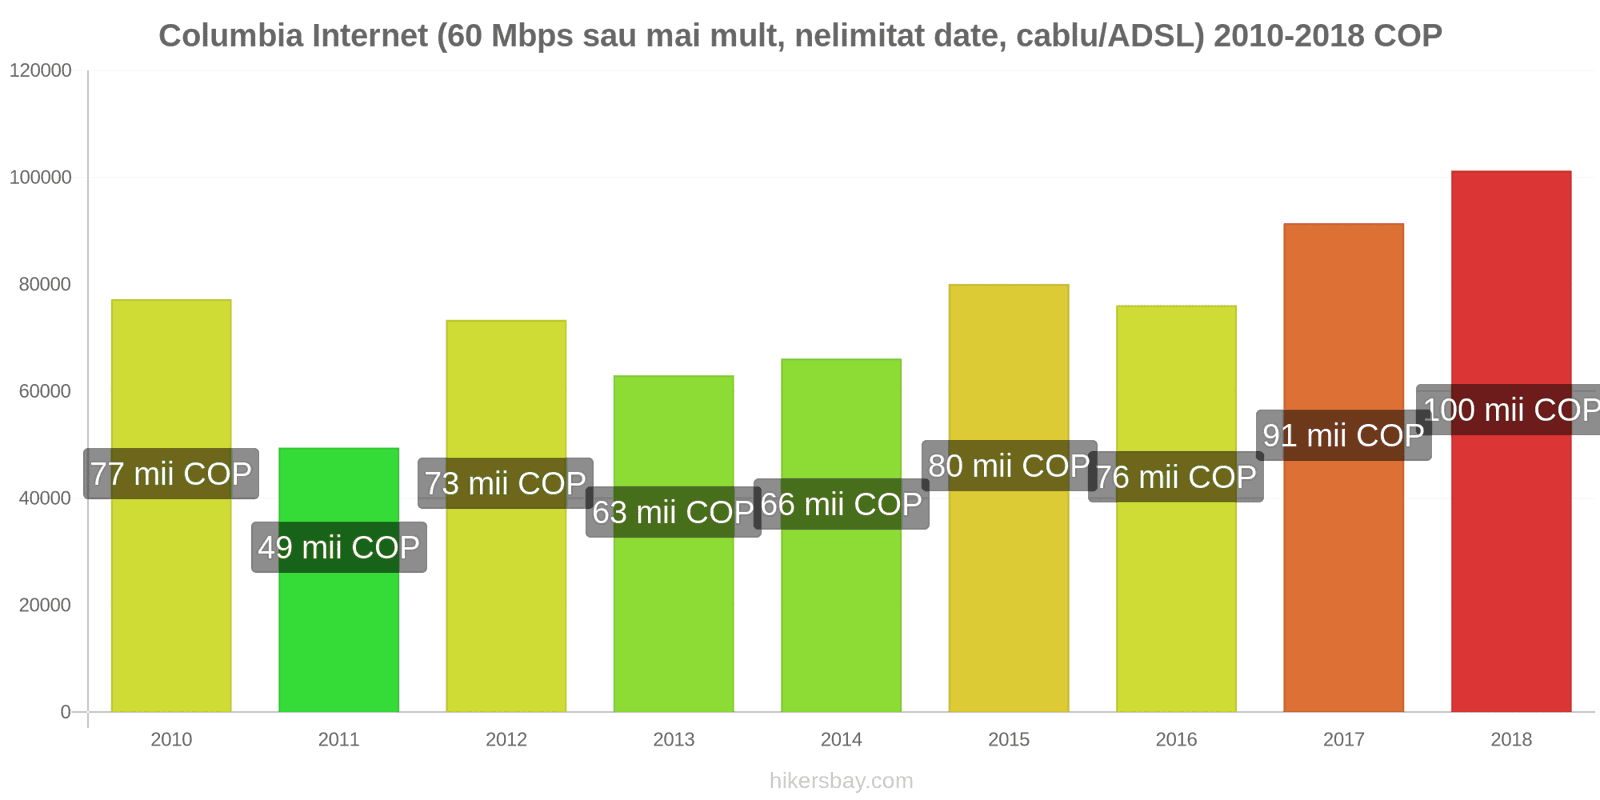 Columbia schimbări de prețuri Internet (60 Mbps sau mai mult, date nelimitate, cablu/ADSL) hikersbay.com